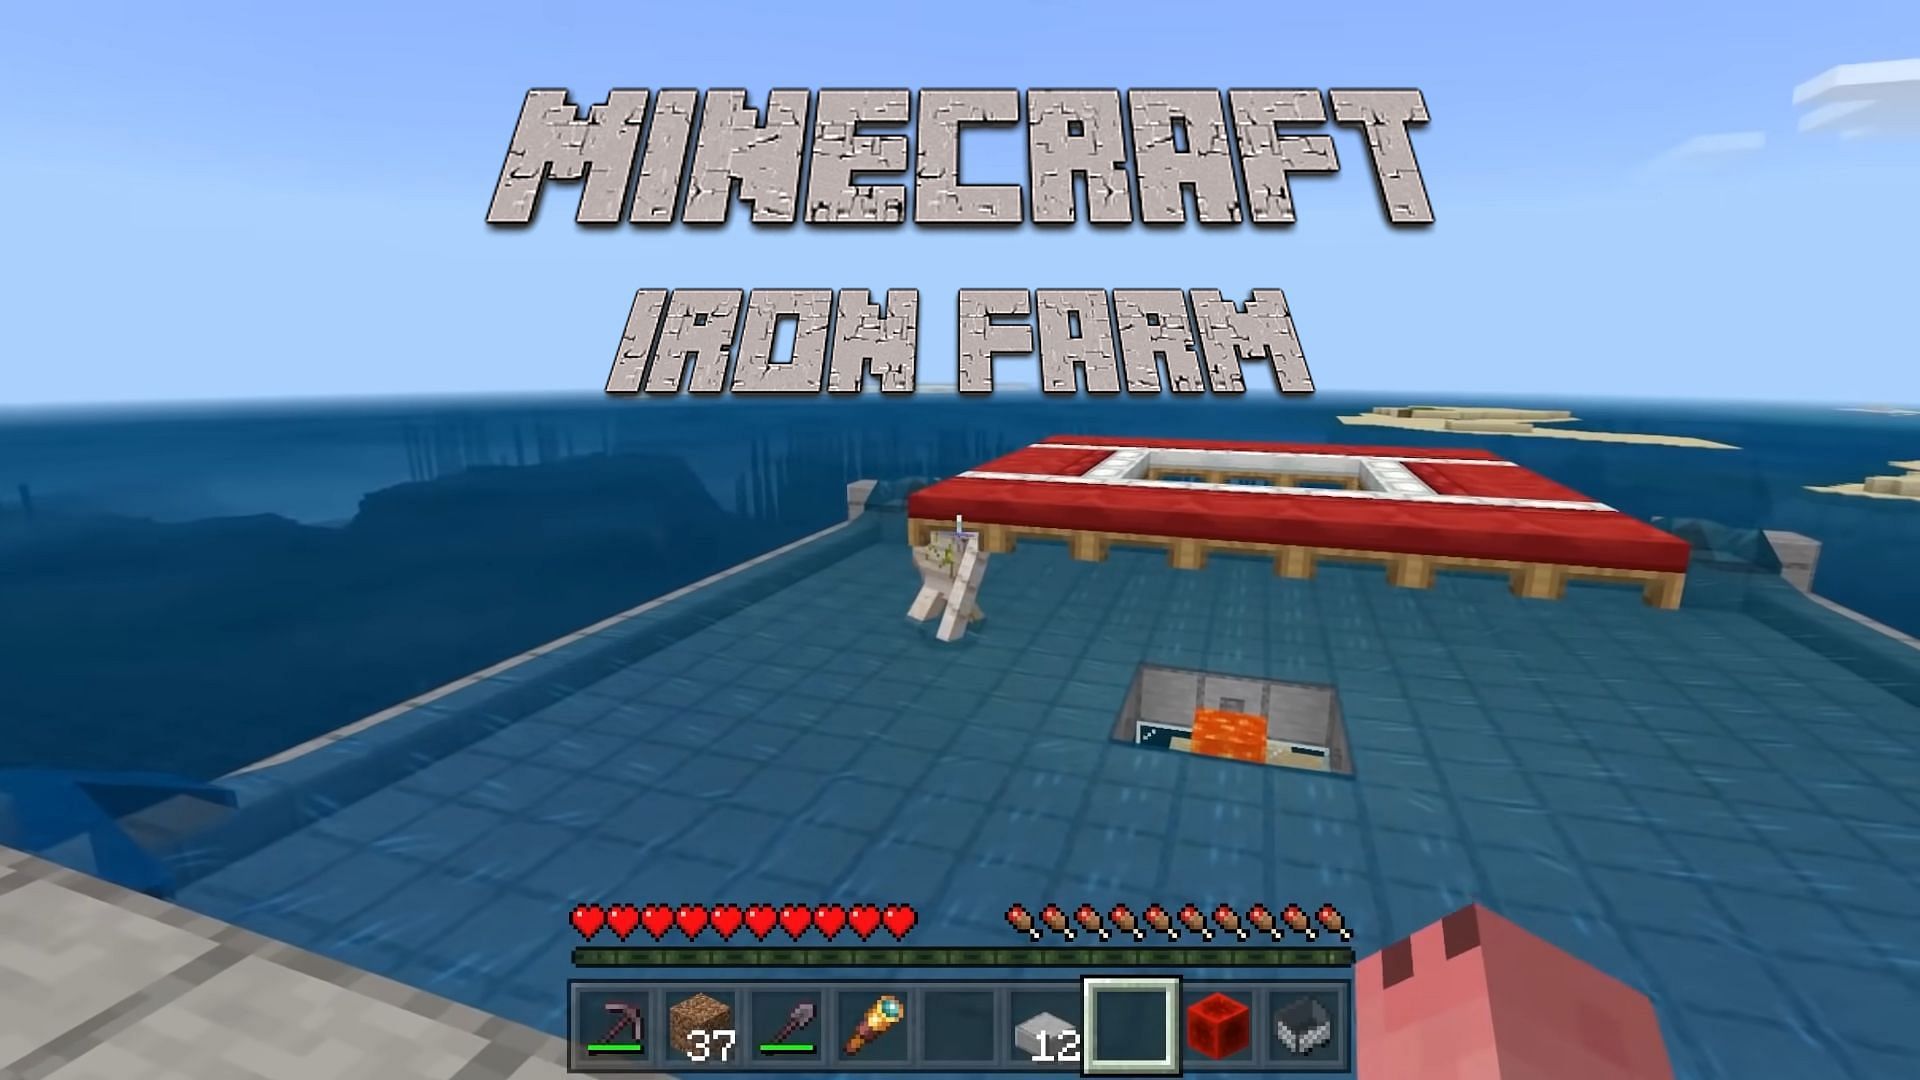 Iron farm tutorial (Image via YouTube/OinkOink)